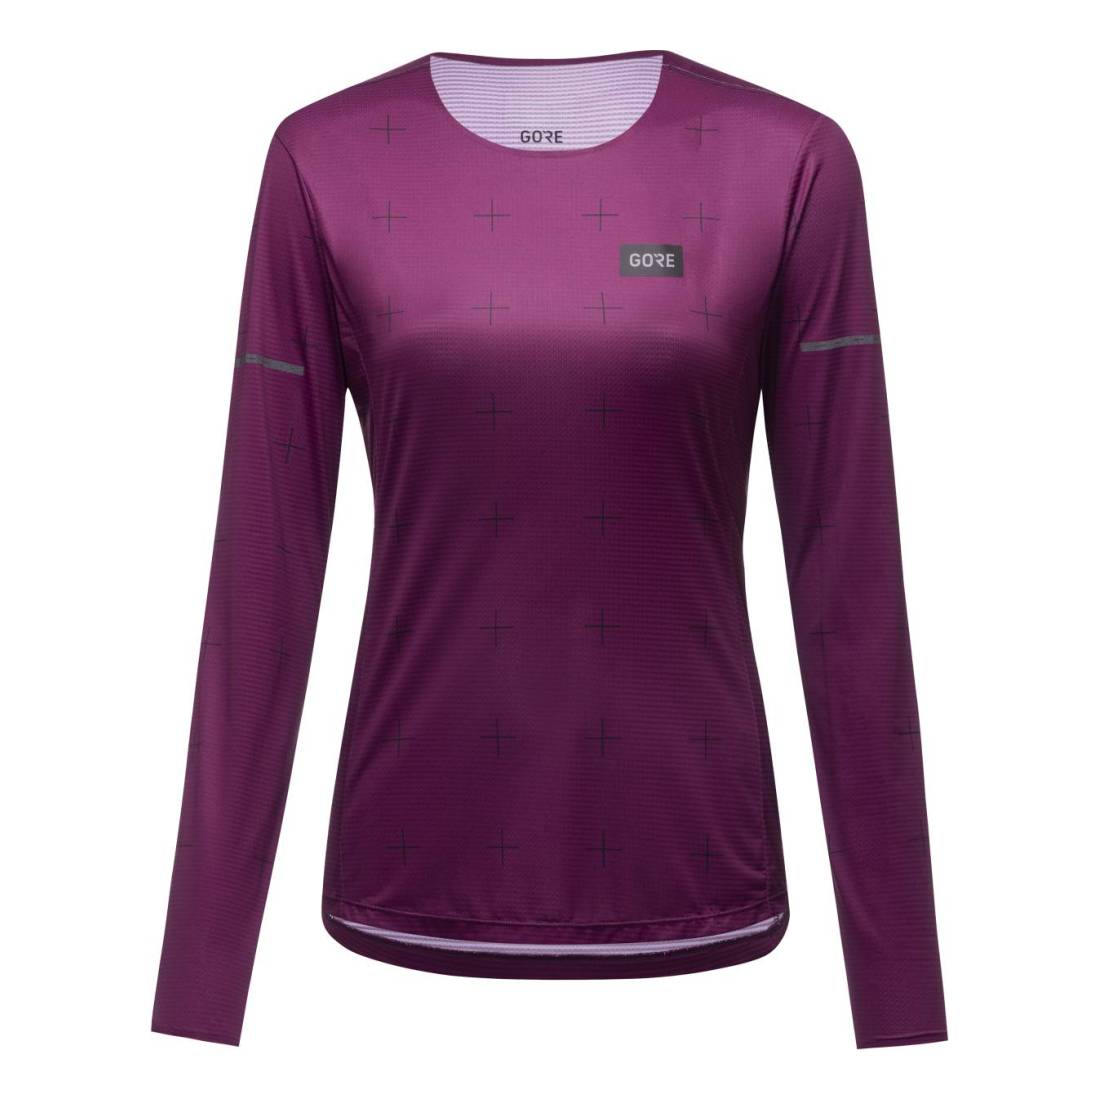 GORE Contest Langarm Shirt Damen Laufshirt purple Gr. 34 von Gore Wear